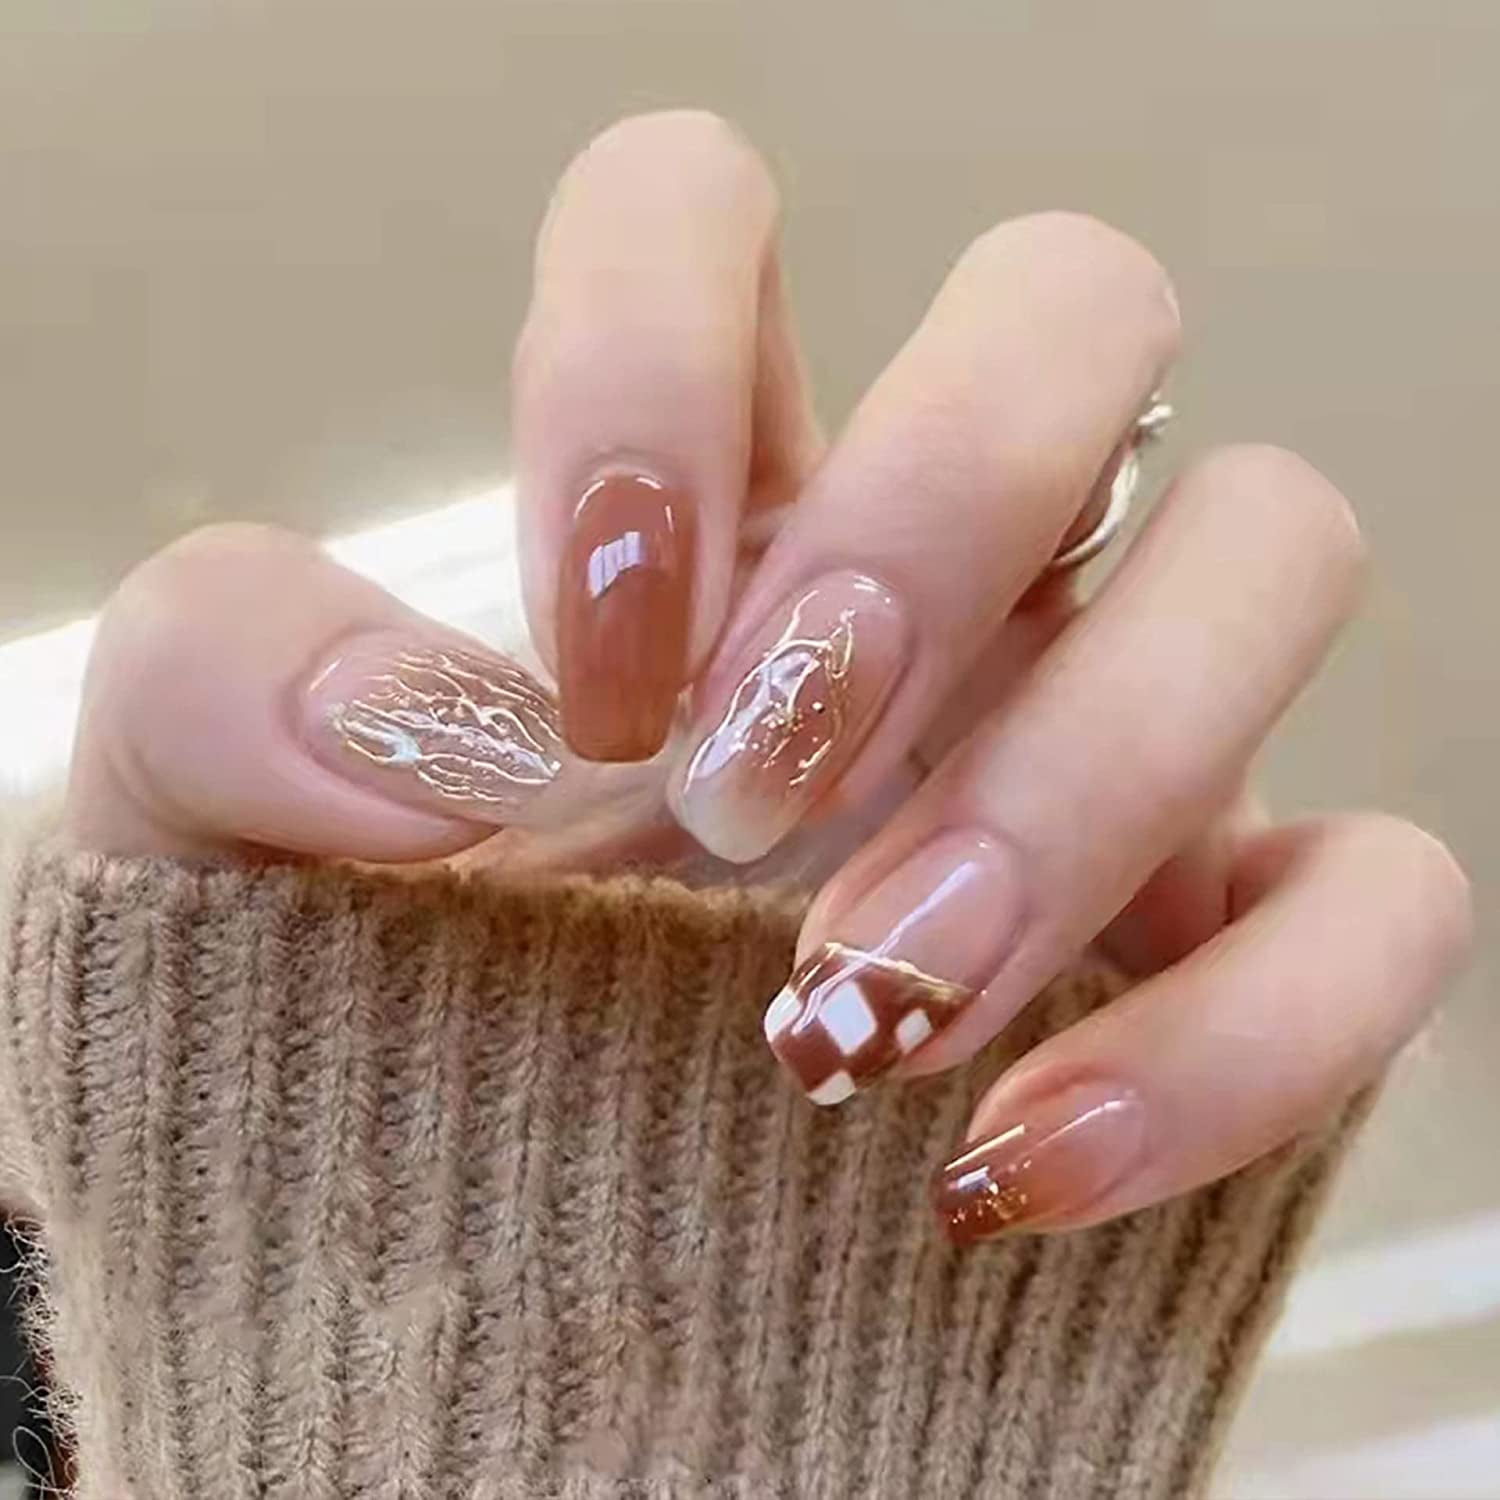 Glass nails #coffinnails | Nails, Glass nails, Nail designs